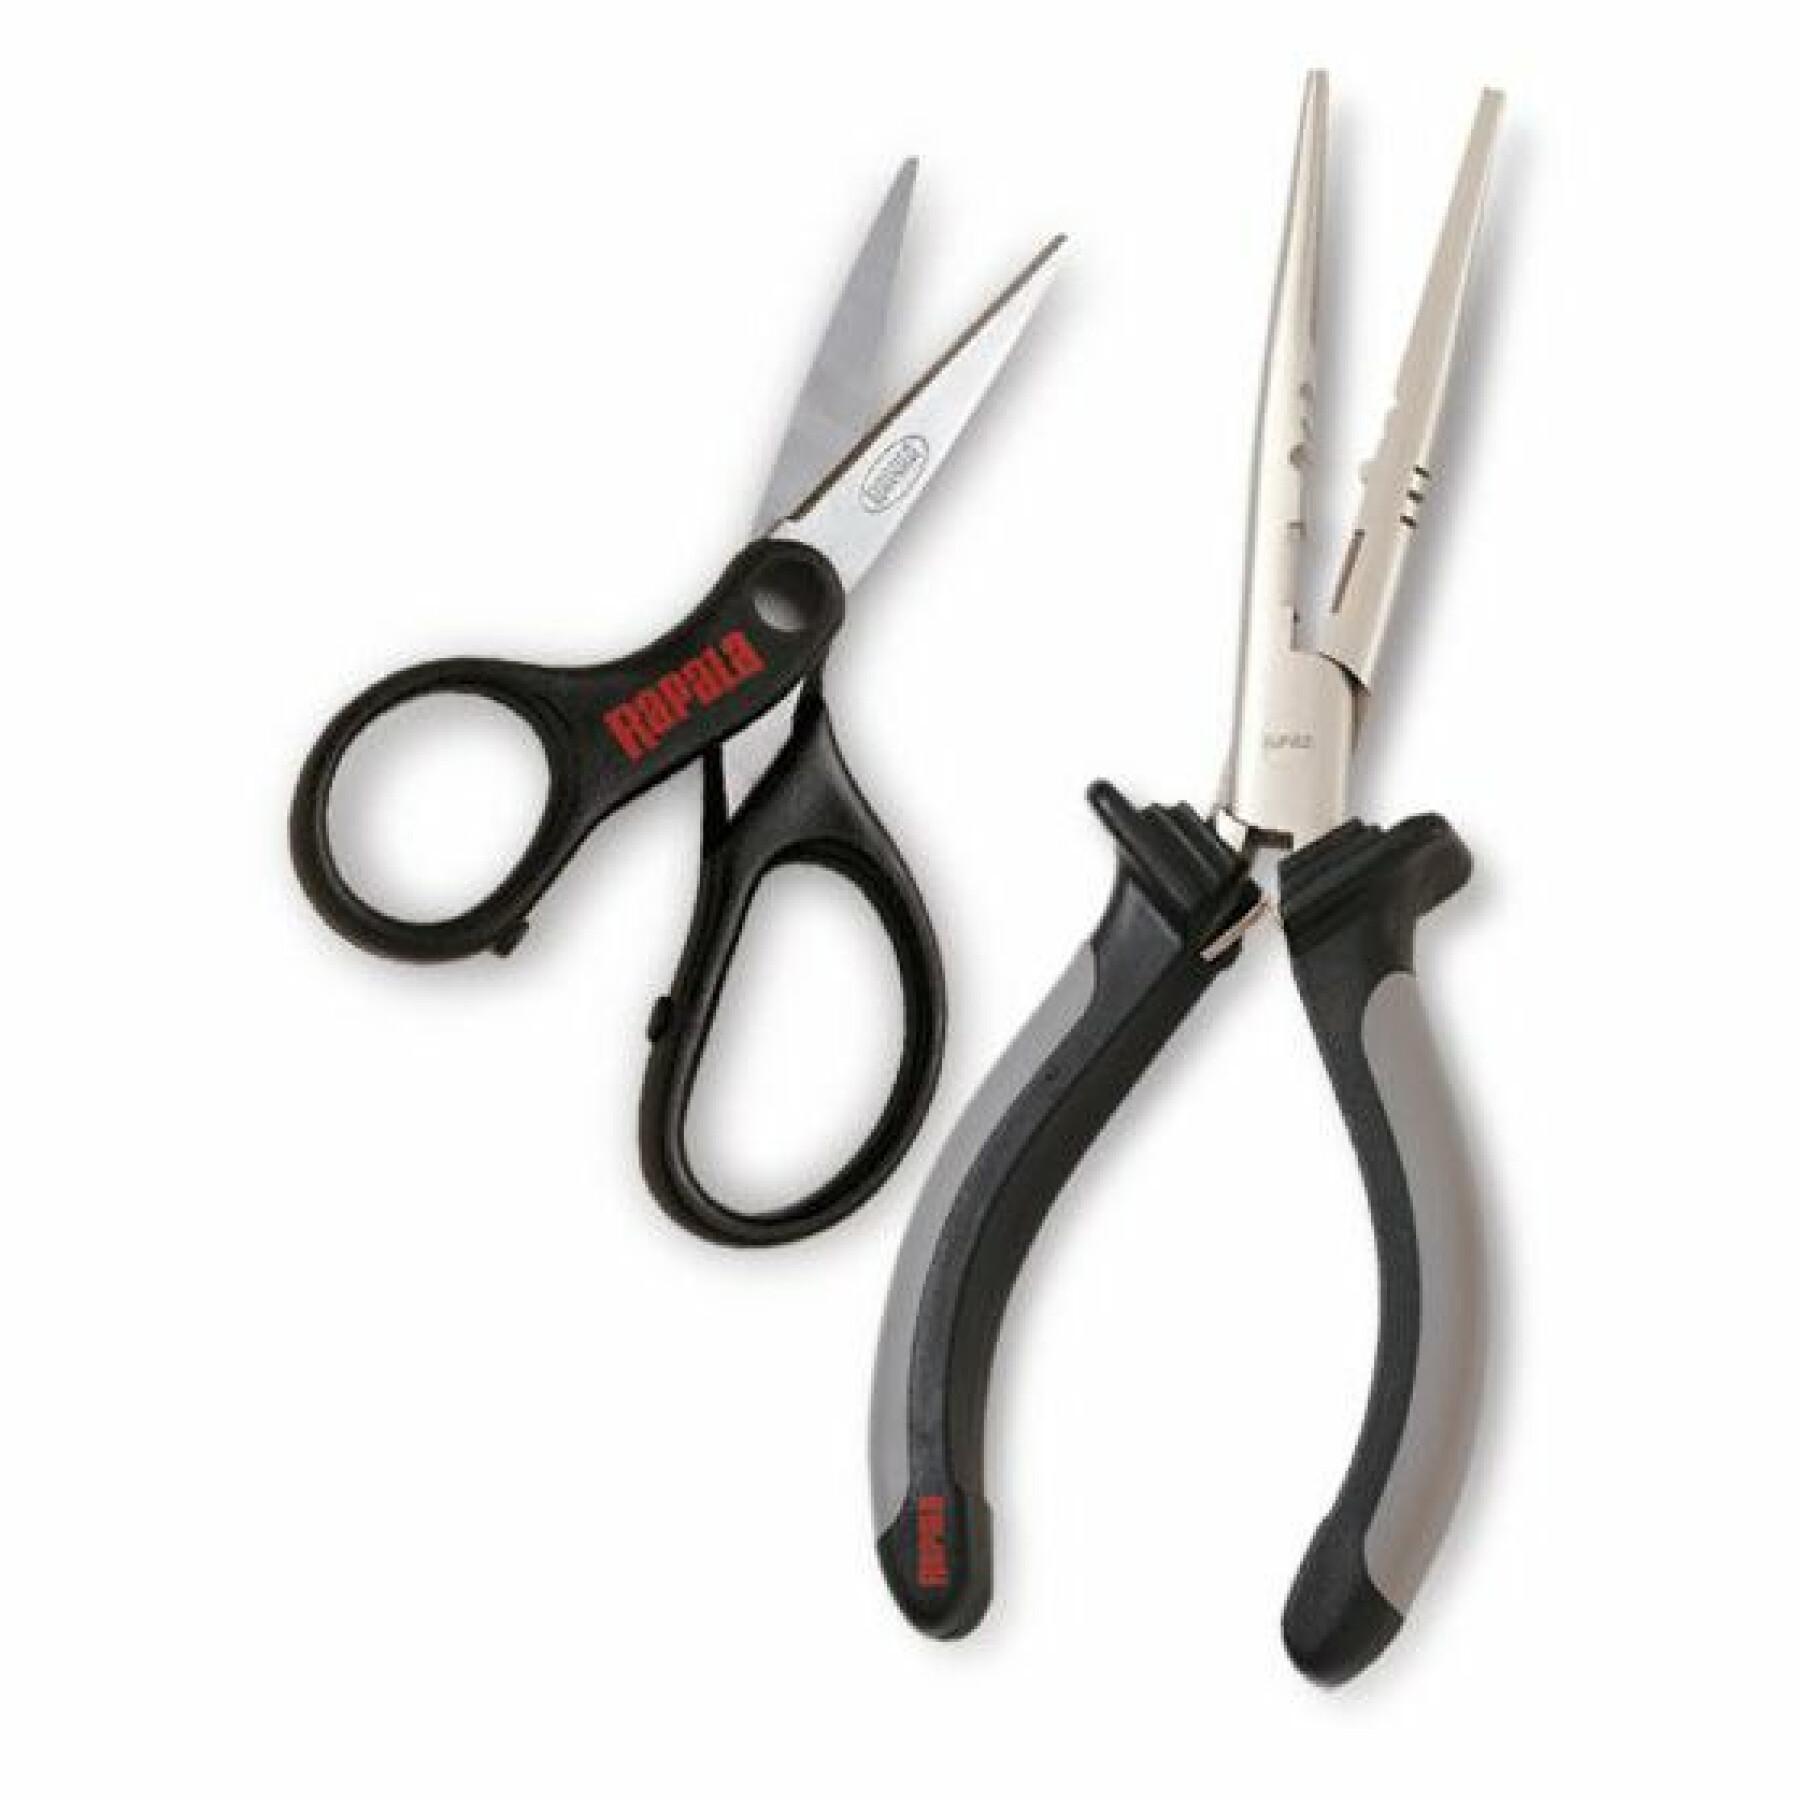 Pliers/scissors Rapala combo